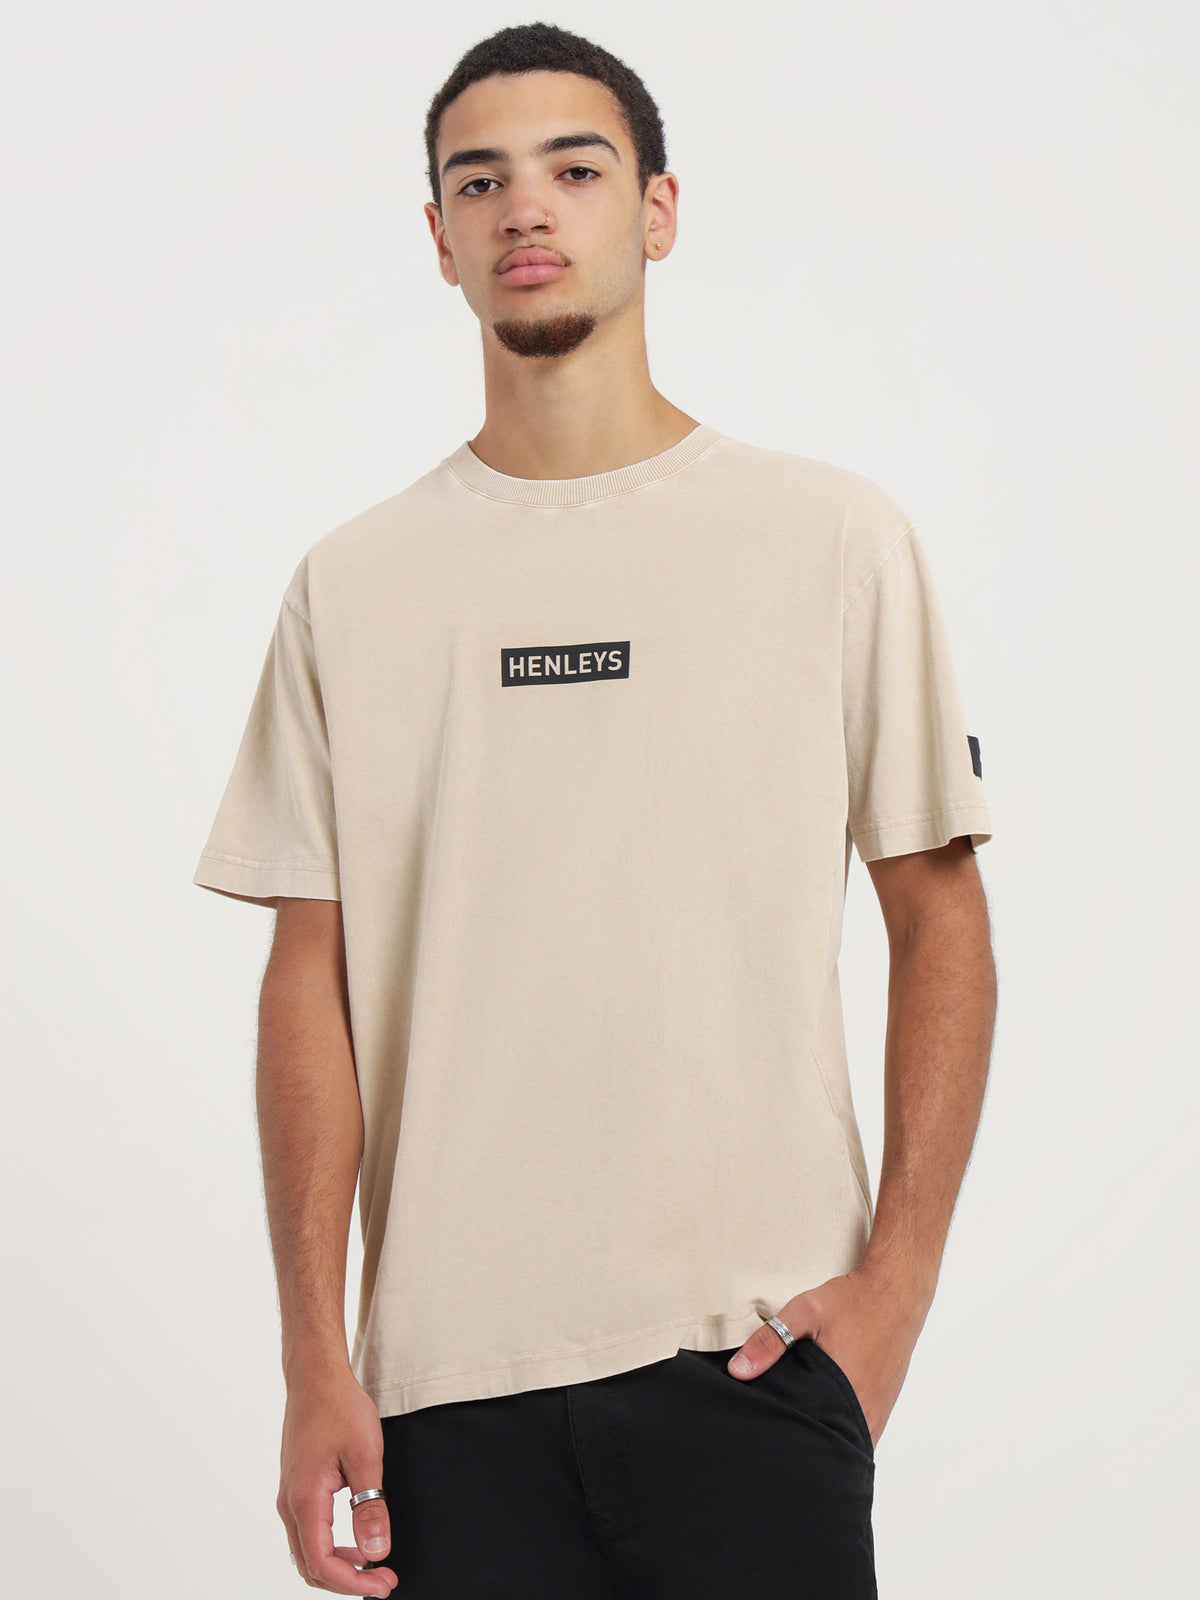 Micro Staple T-Shirt in Cream